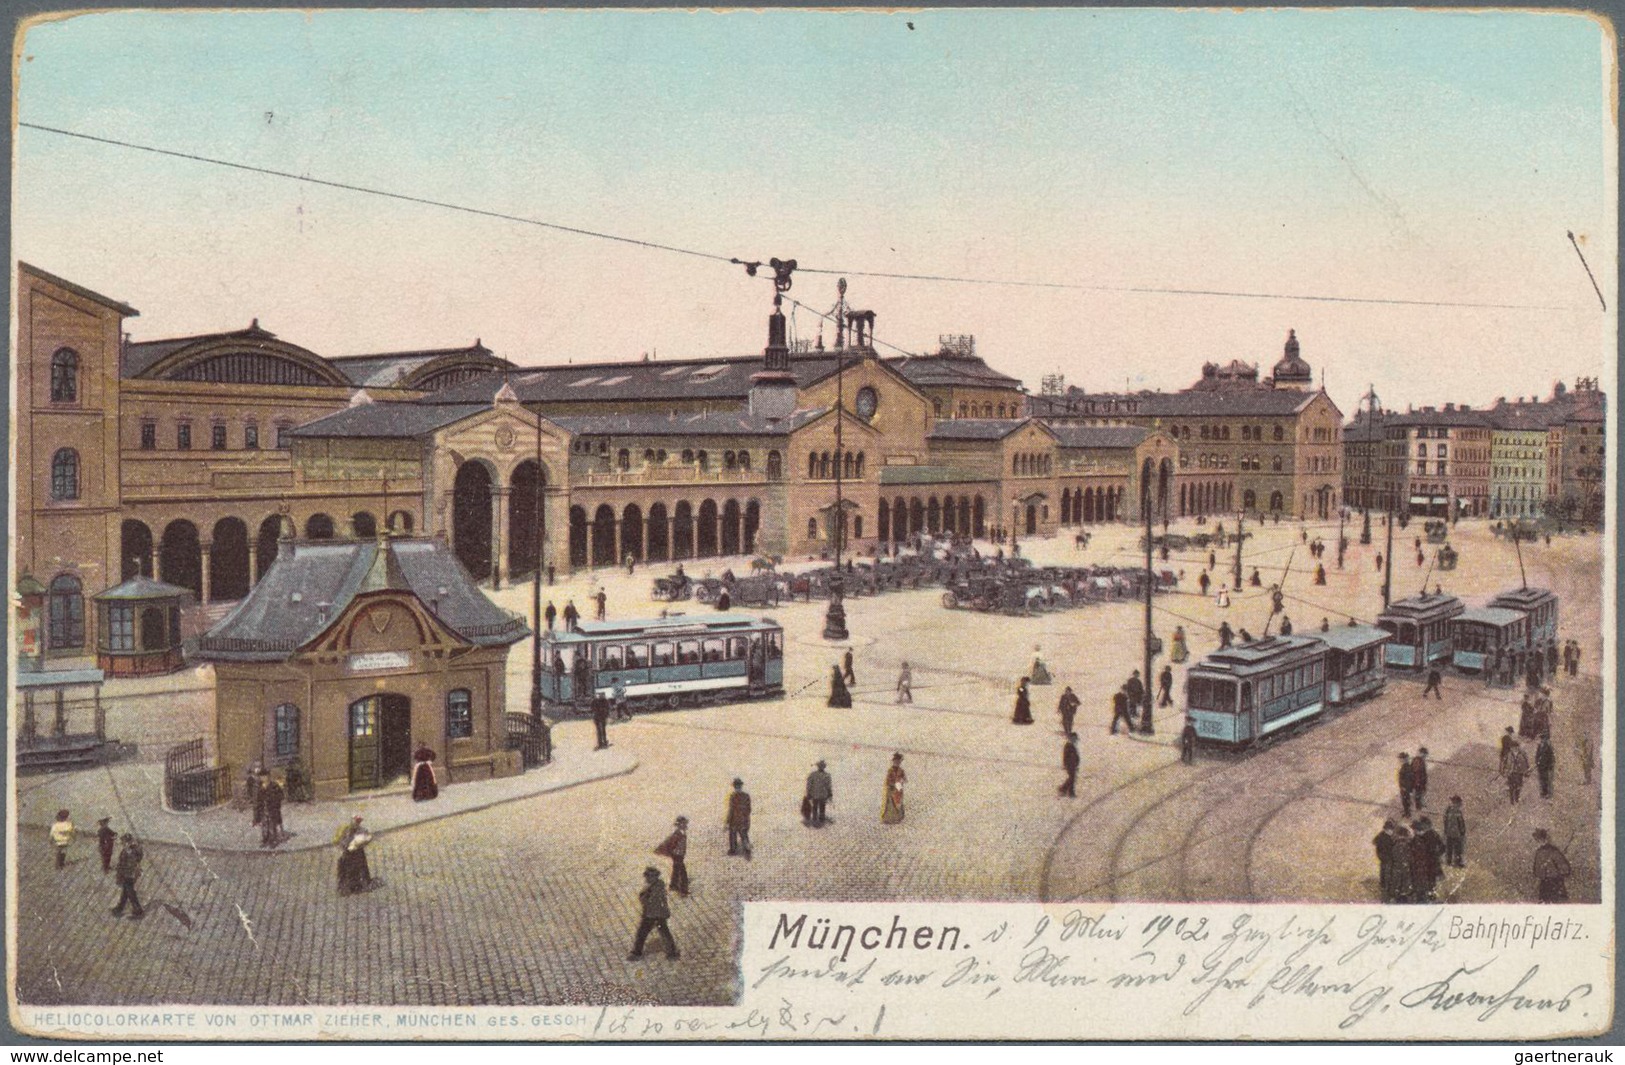 Ansichtskarten: Deutschland: 1900-60, Sammlung von Ansichtskarten im großen Album, dabei viele "Grus